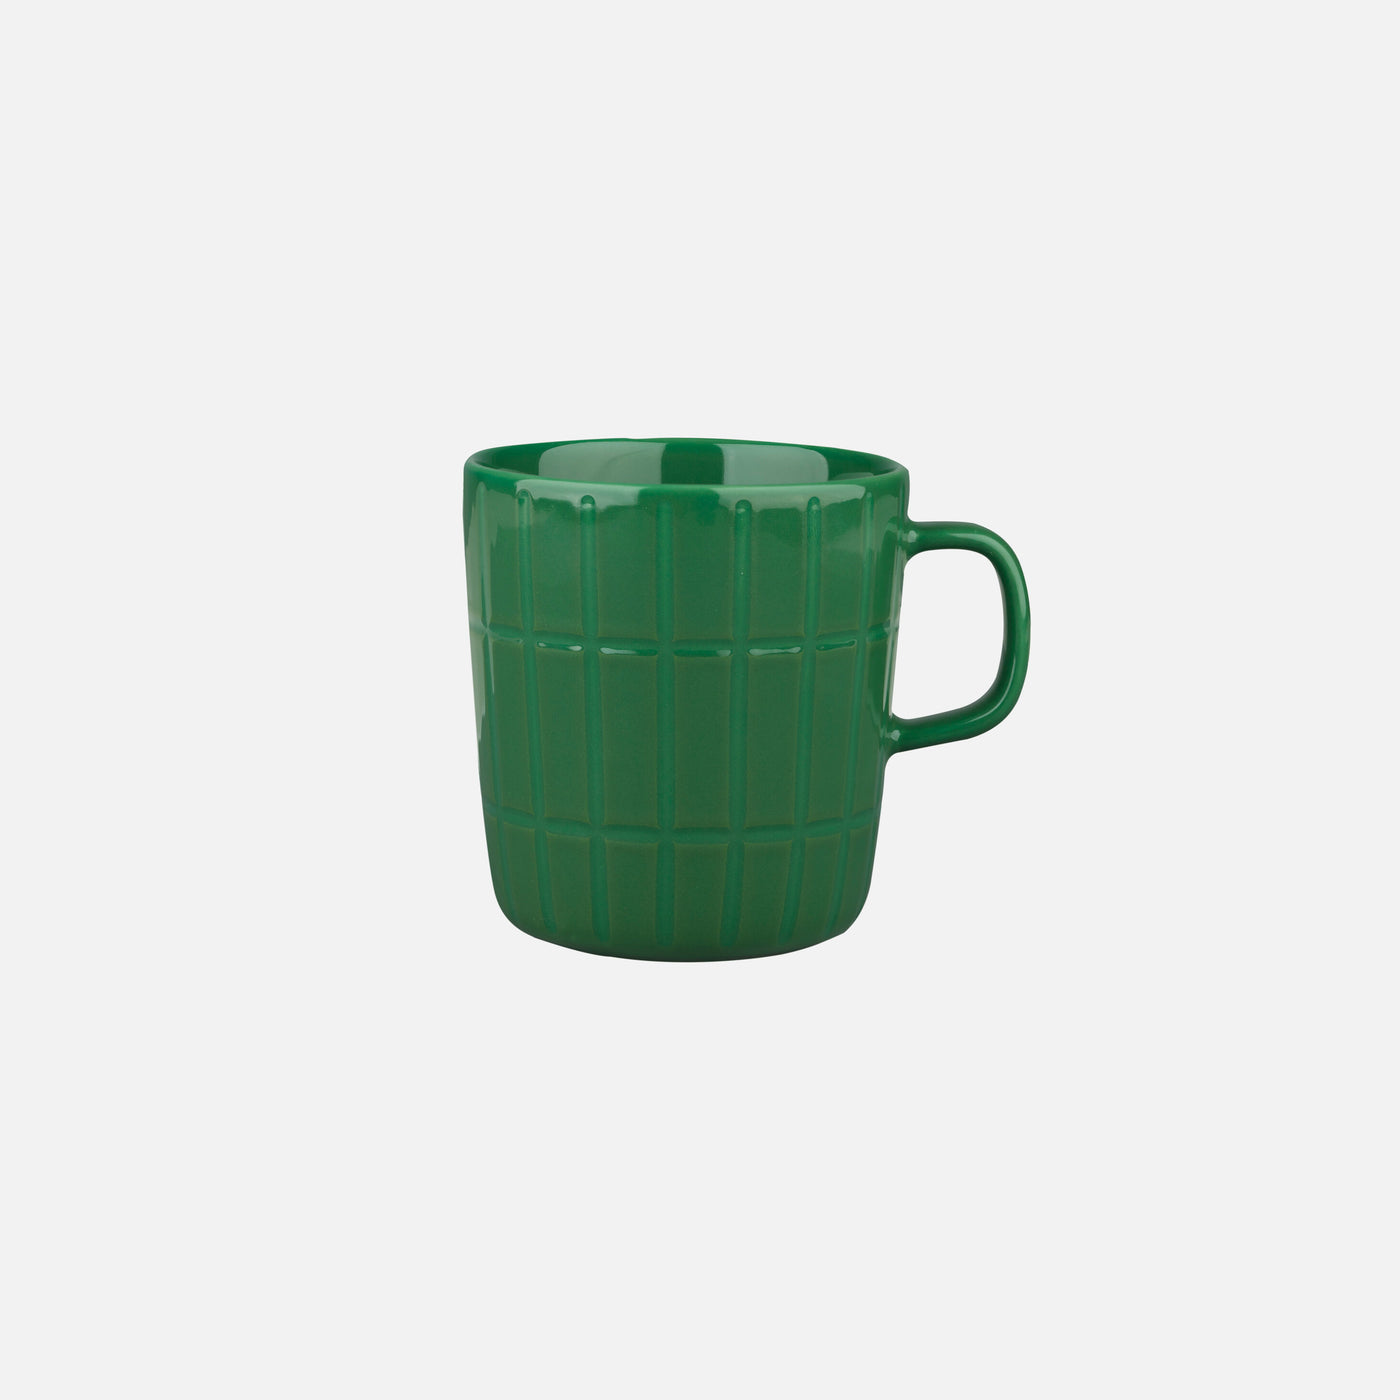 Oiva / Tiiliskivi Mug 4 Dl - green